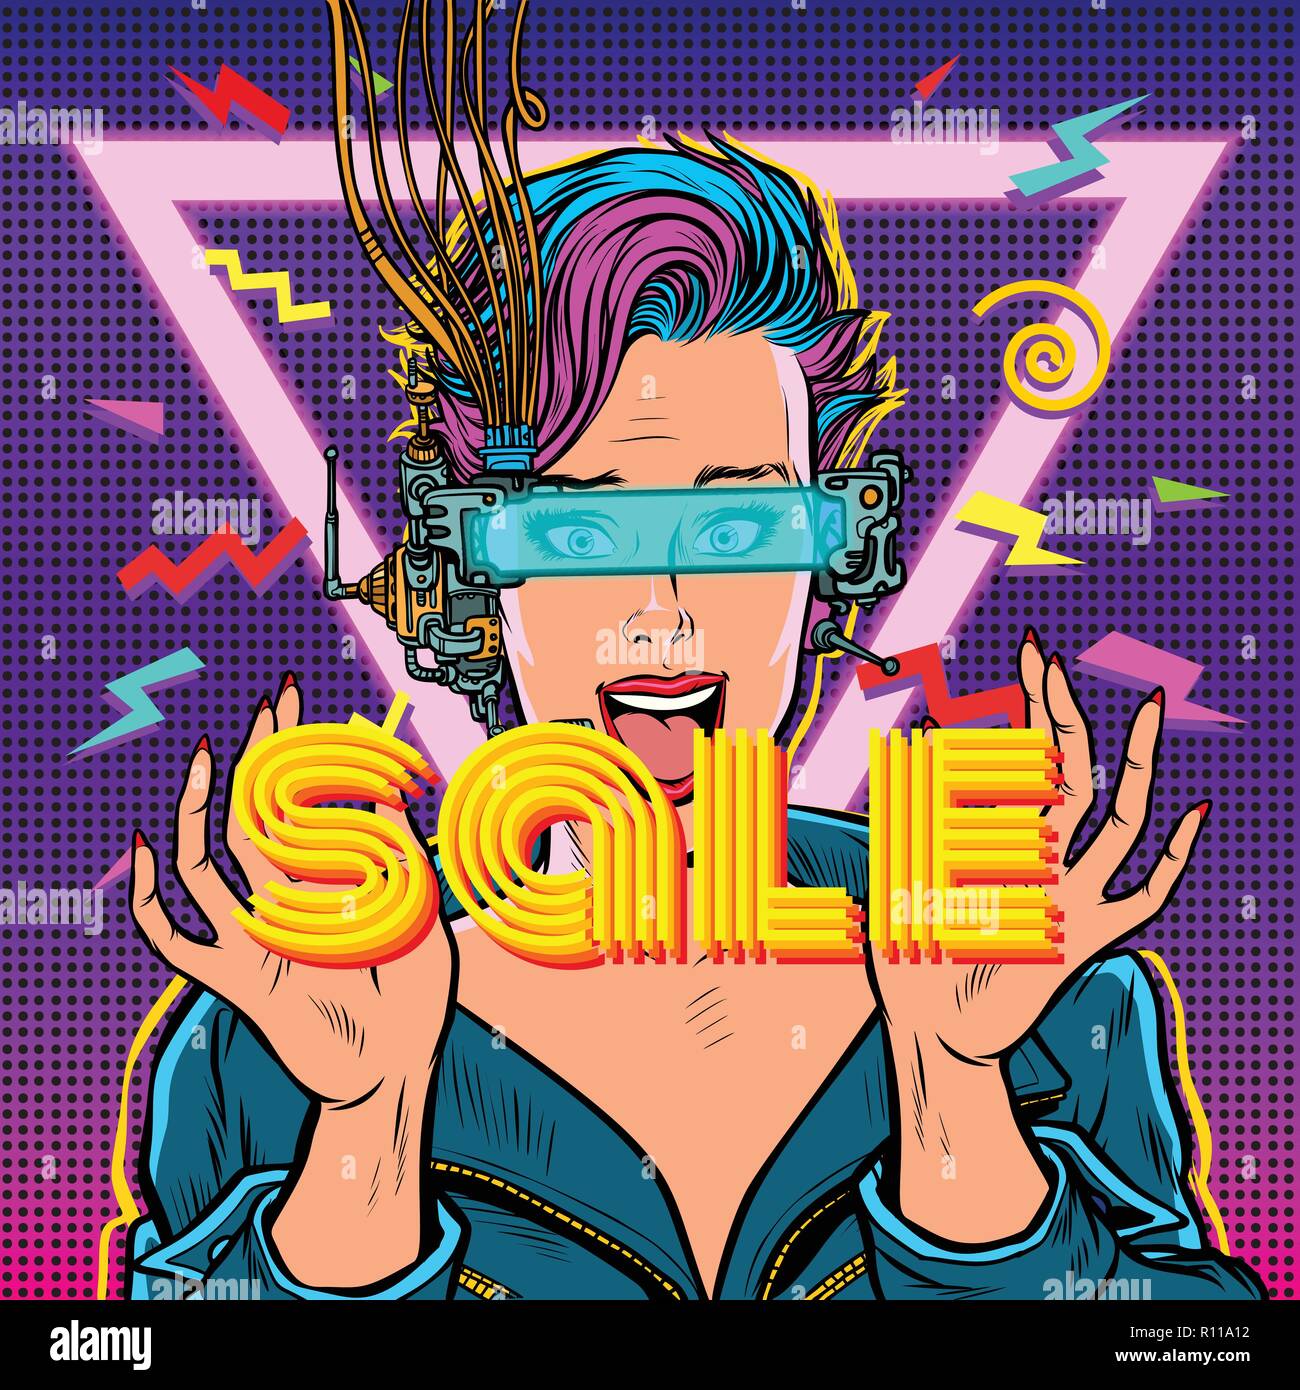 La vente. achat en ligne. femme joyeuse en réalité virtuelle Illustration de Vecteur